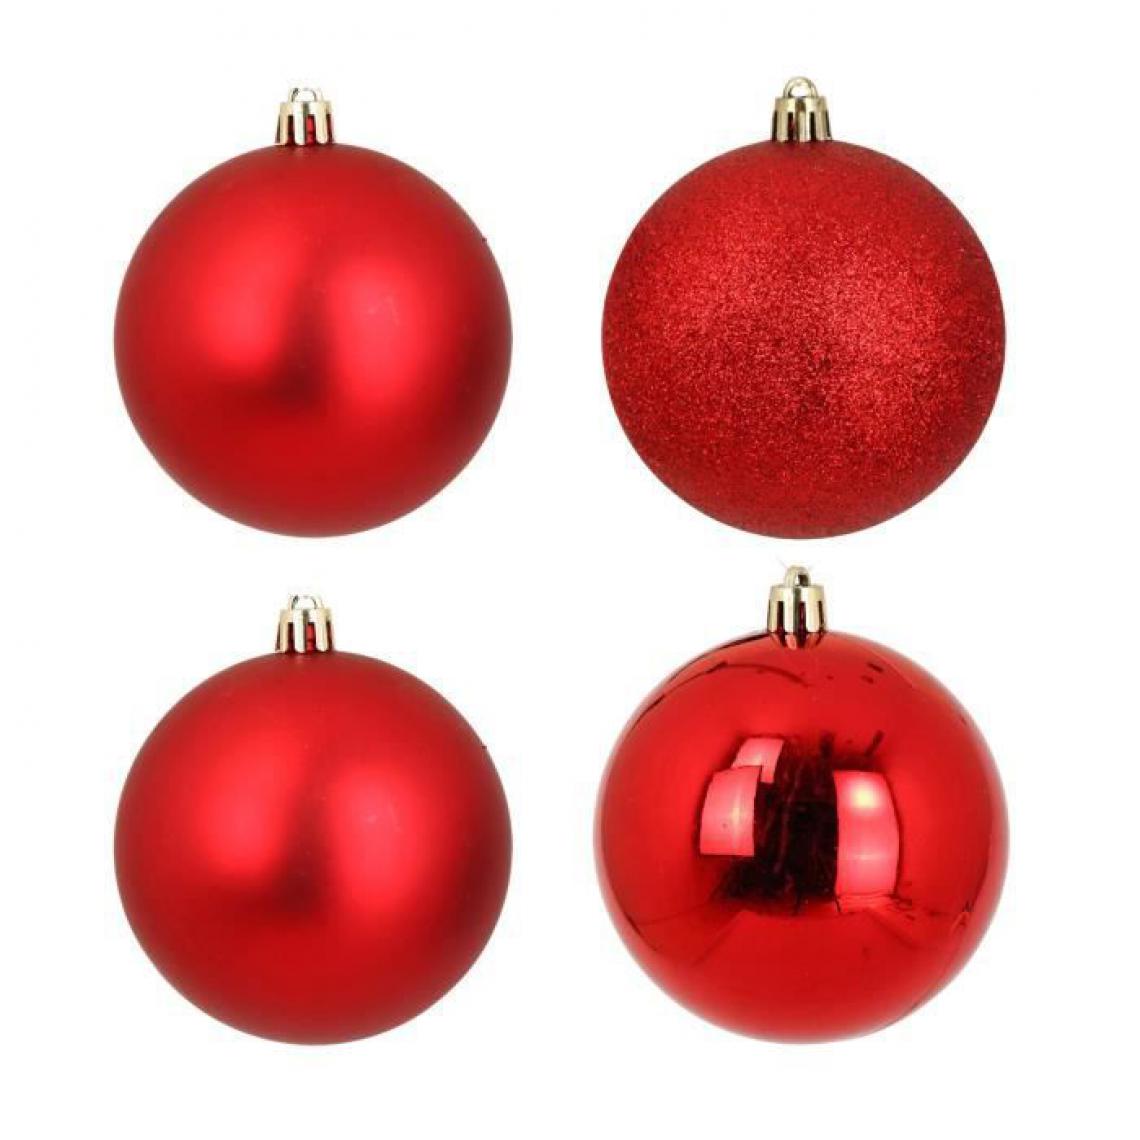 Cstore - CSTORE - Lot de 4 Boules de Noël 3 finitions assorties Rouge - Décorations de Noël